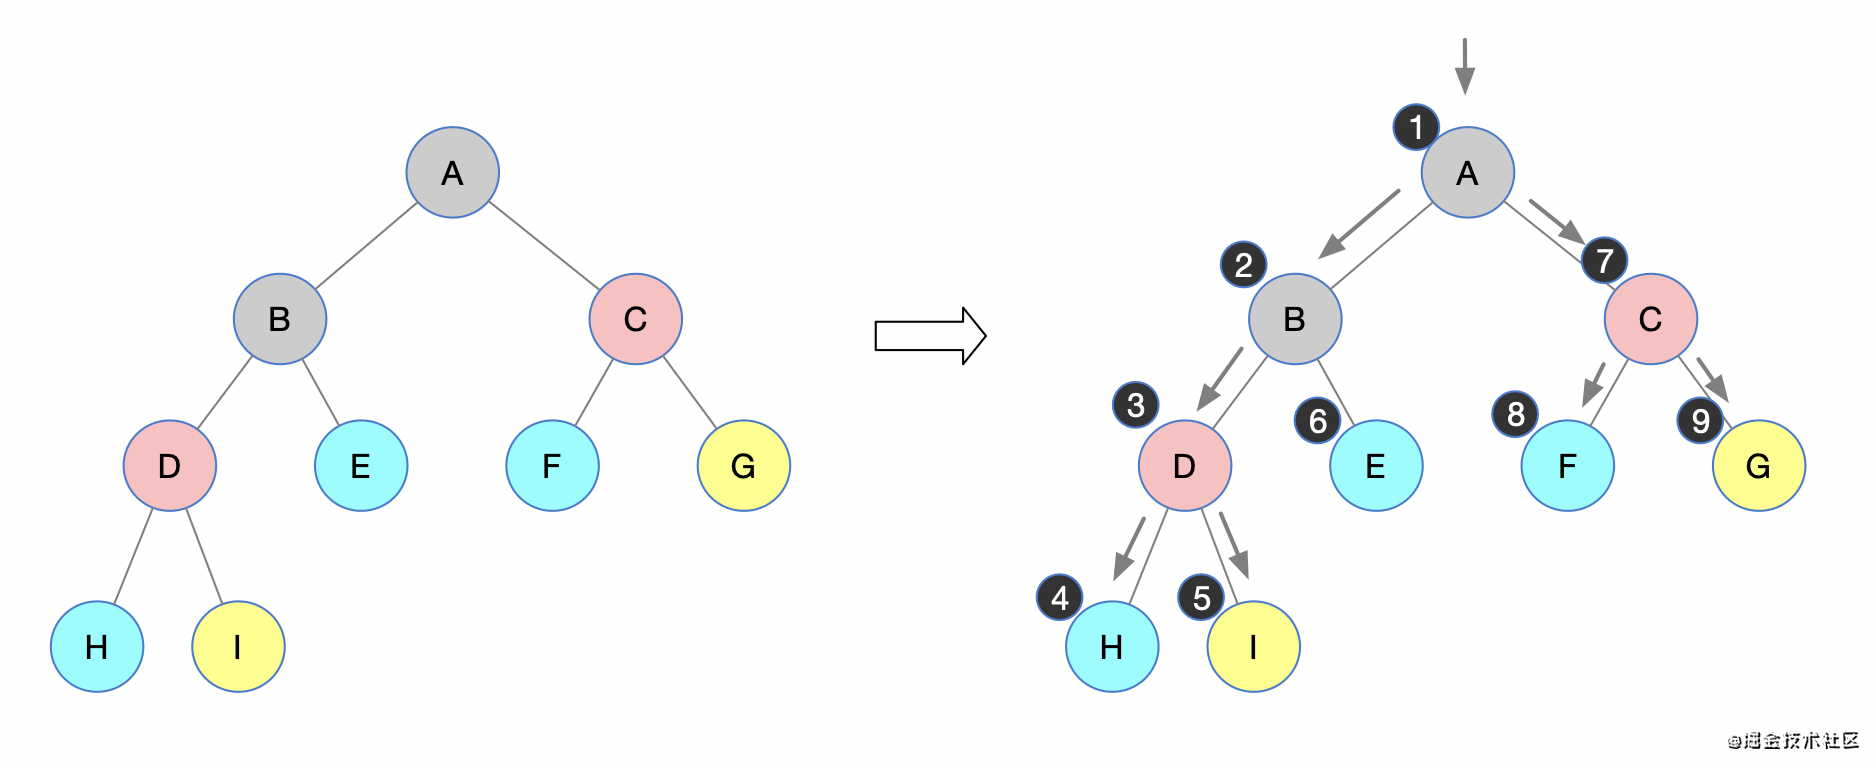 2.二叉树的先序遍历(递归和非递归)-1.png